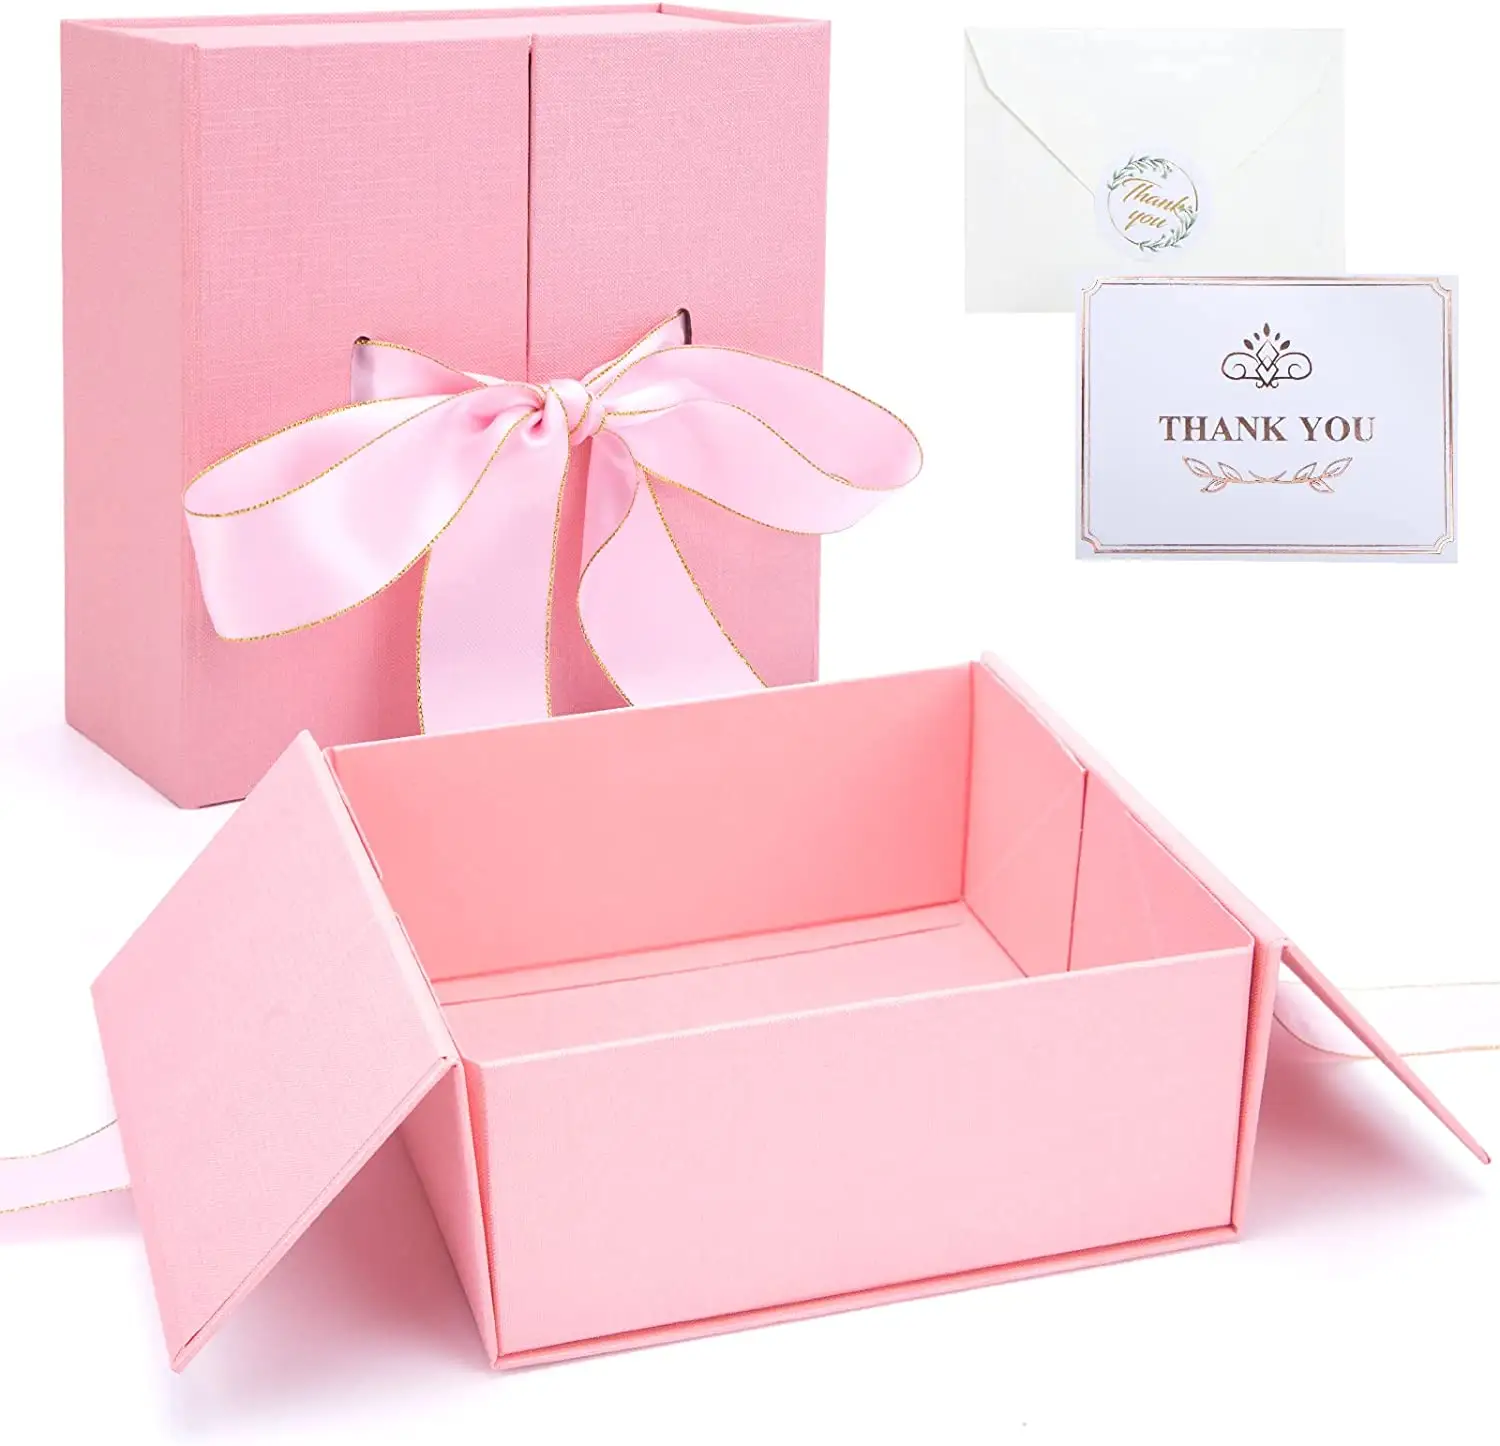 핑크 선물 상자 8 인치 큰 선물 상자 뚜껑 리본 광장 선물 상자 웨딩 생일 기념일 발렌타인 데이 베이비 샤워